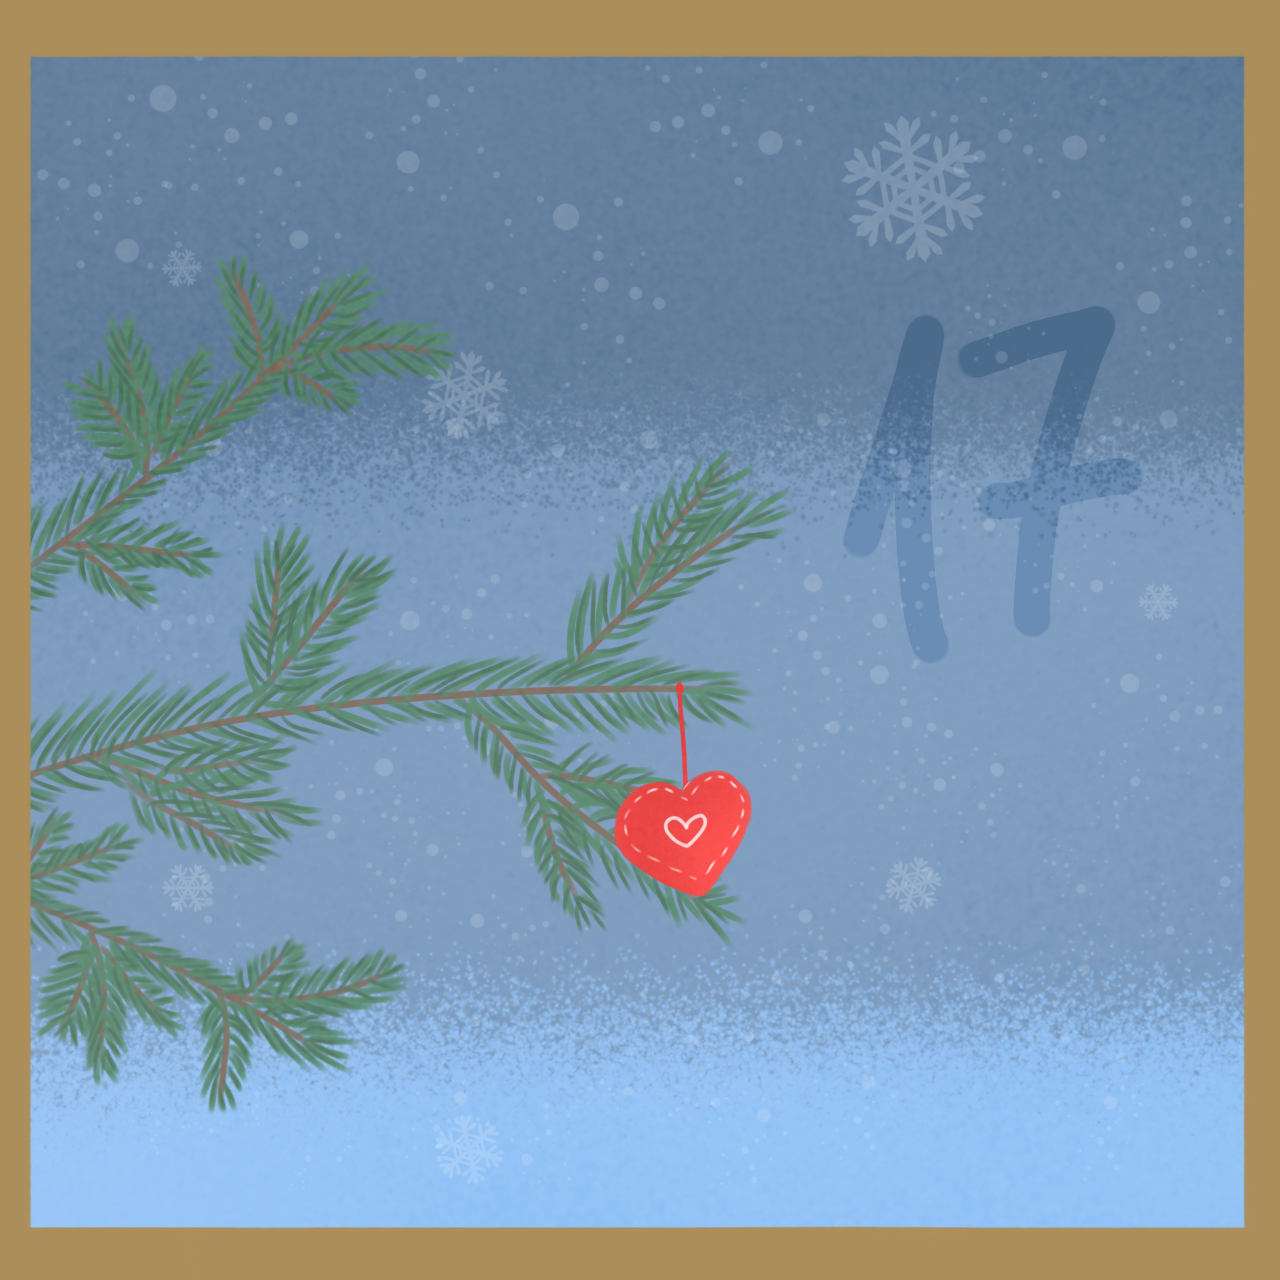 Ein blauer Hintergrund mit Schneeflocken. Links im Bild sind gemalte Tannenzweige. Rechts befindet sich die Nummer 17.